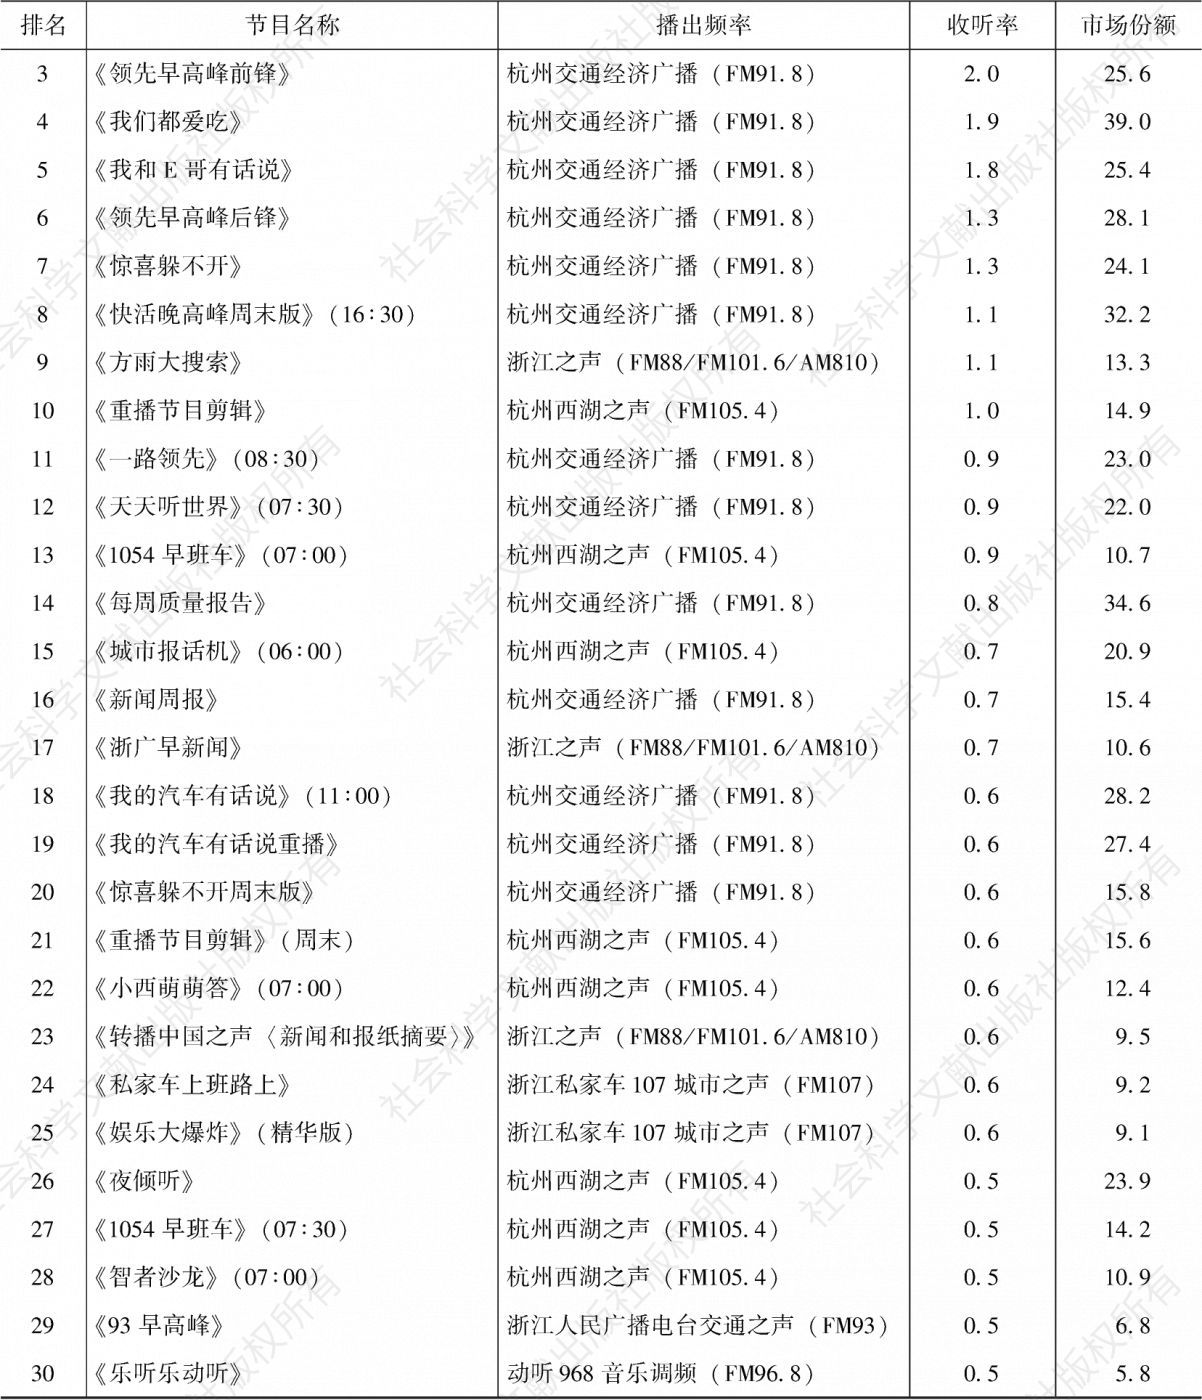 表4.8.7 2020年杭州市场收听率排名前30的节目-续表